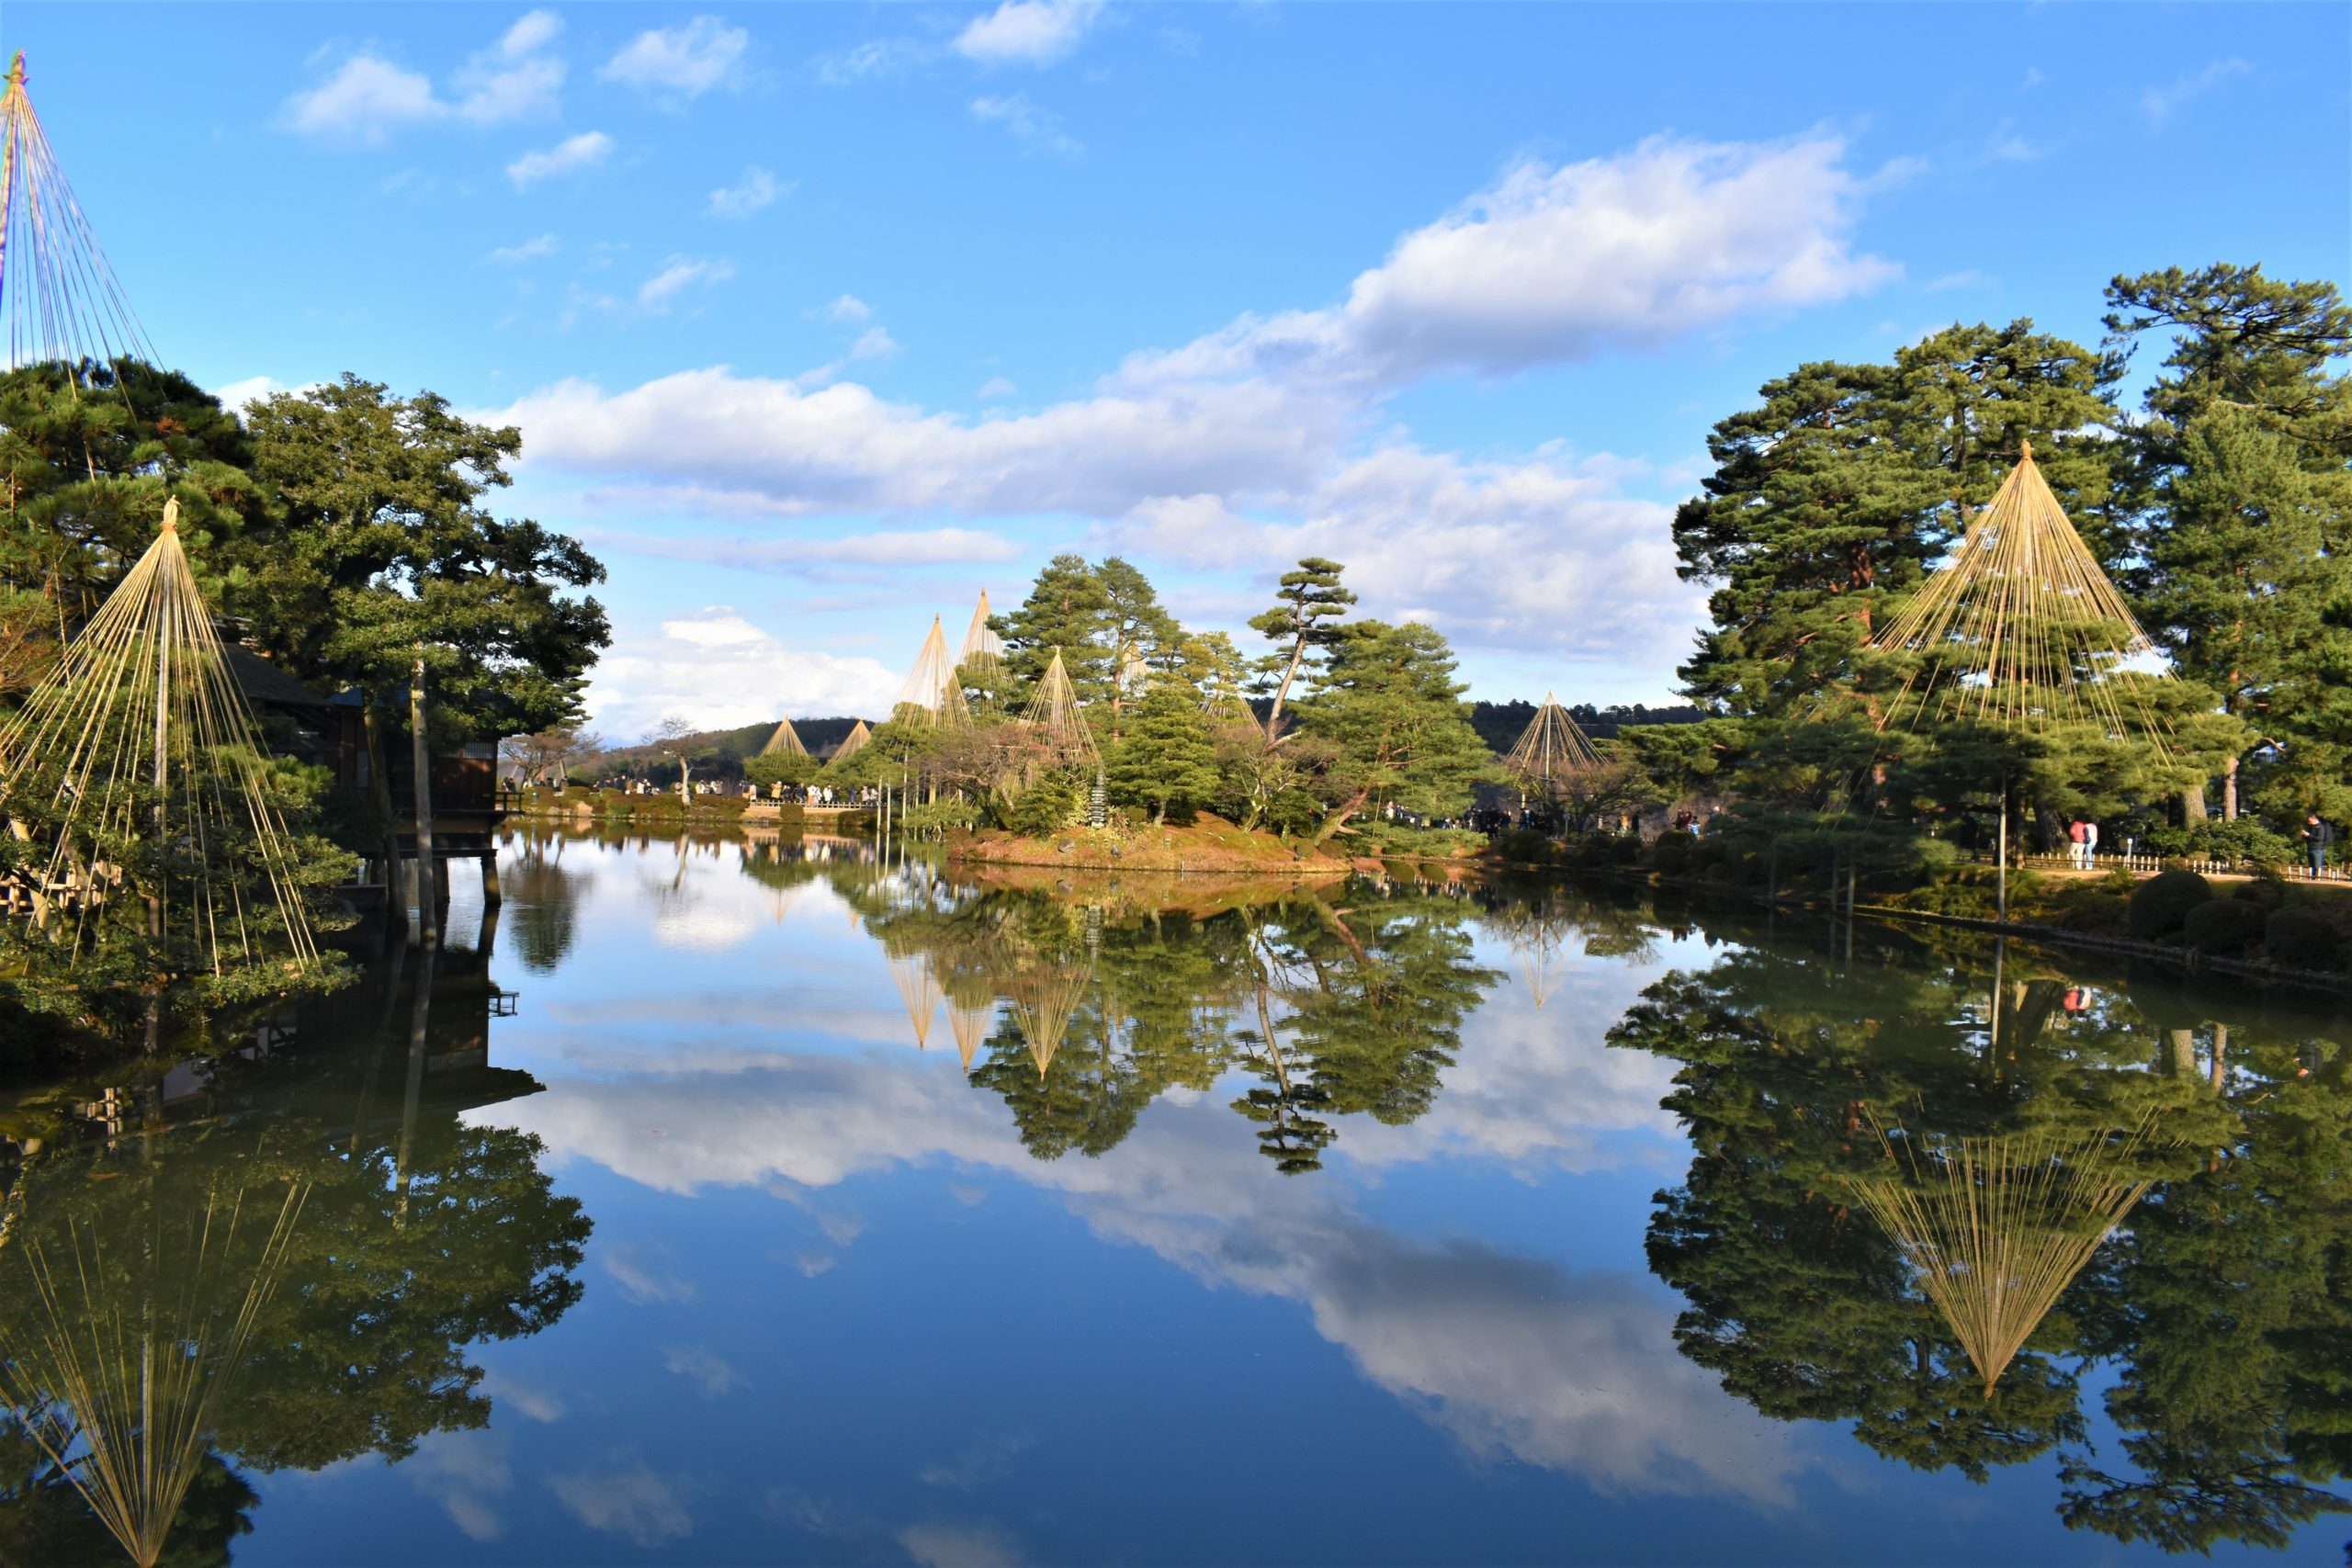 Kenrokuen Garden, Japan